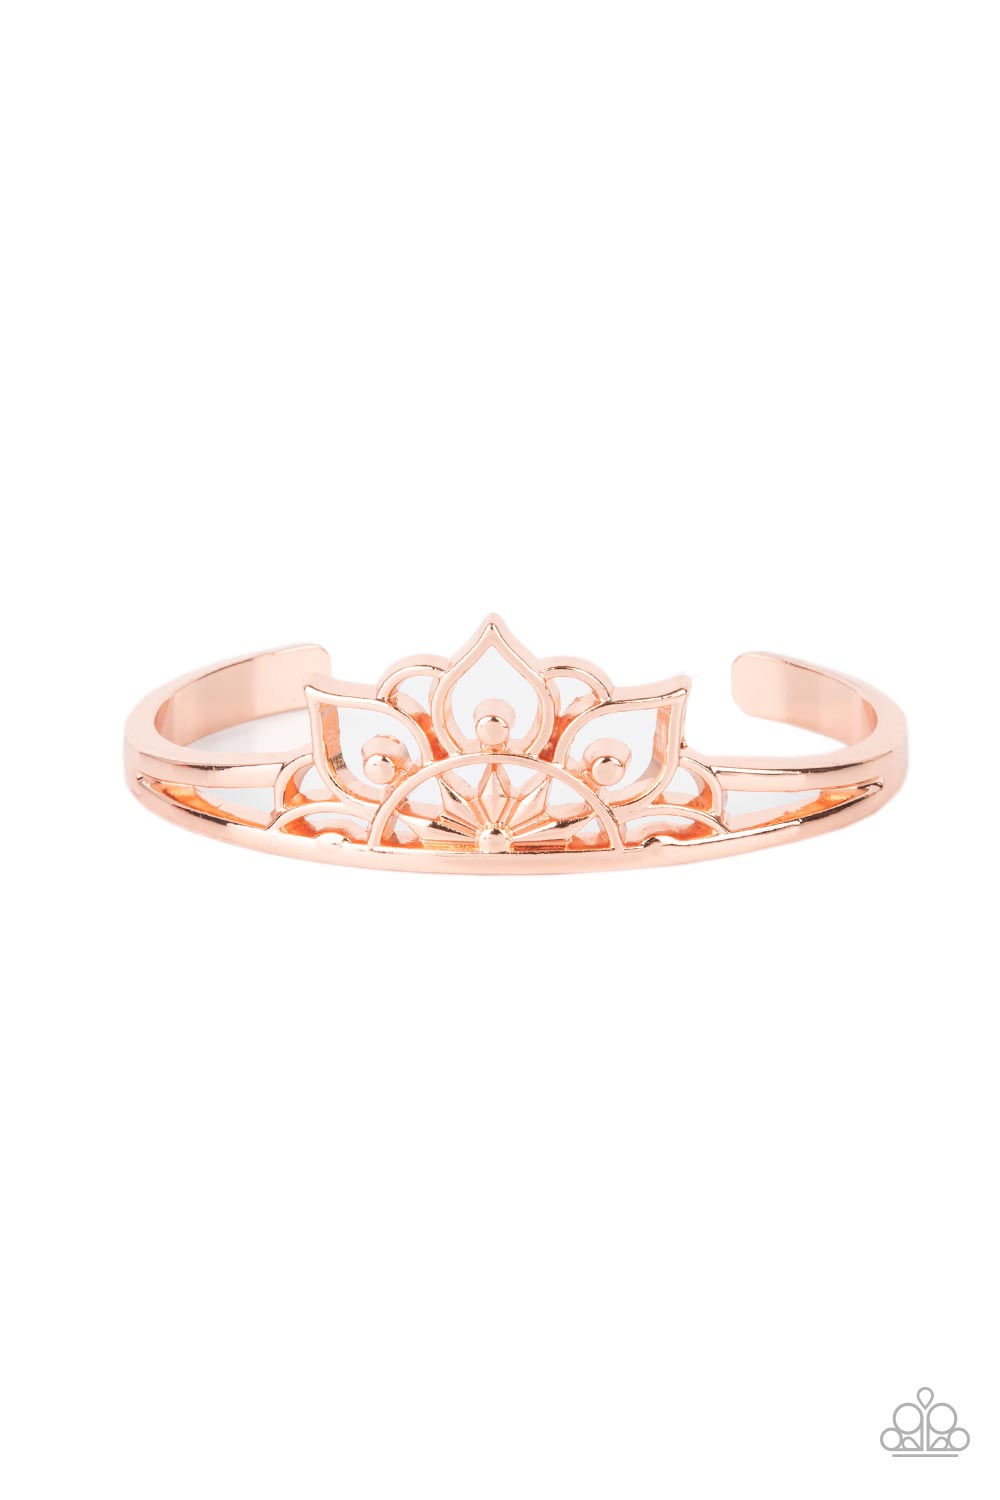 Mandala Mindfulness - Copper Cuff Bracelet - Princess Glam Shop